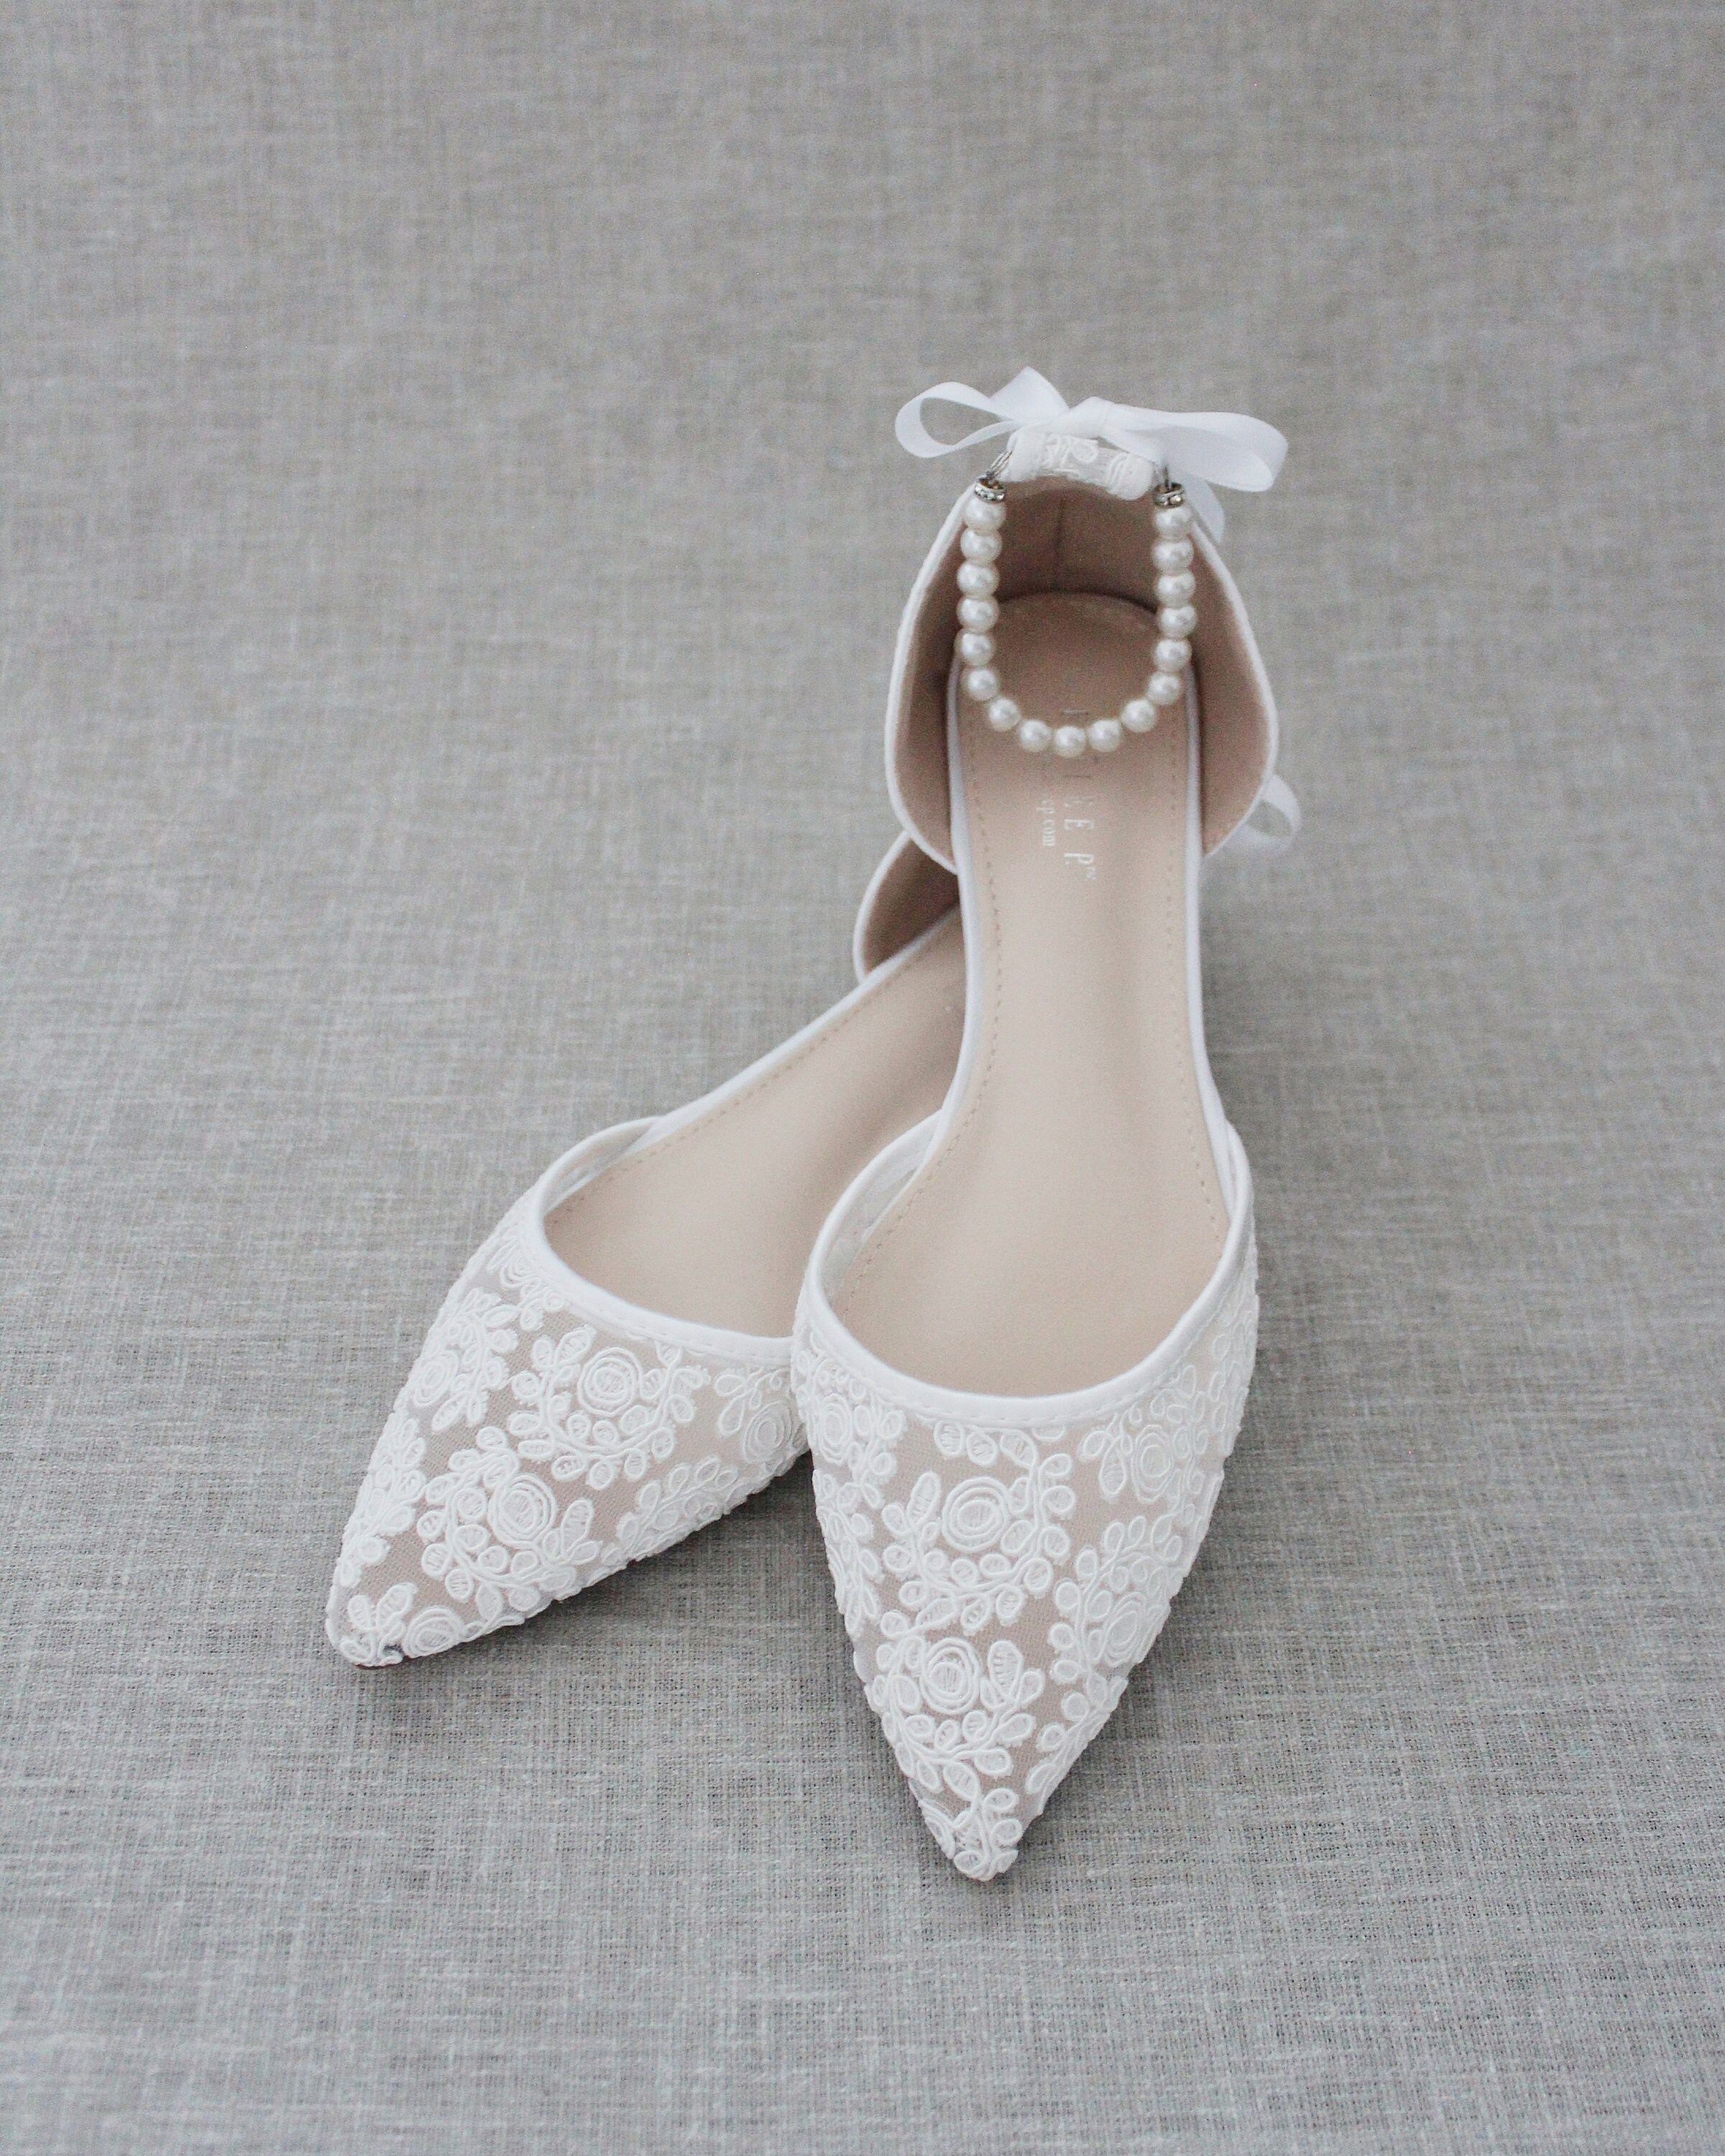 White Crochet Lace Pointy Toe Flats Women Wedding Shoes - Etsy UK